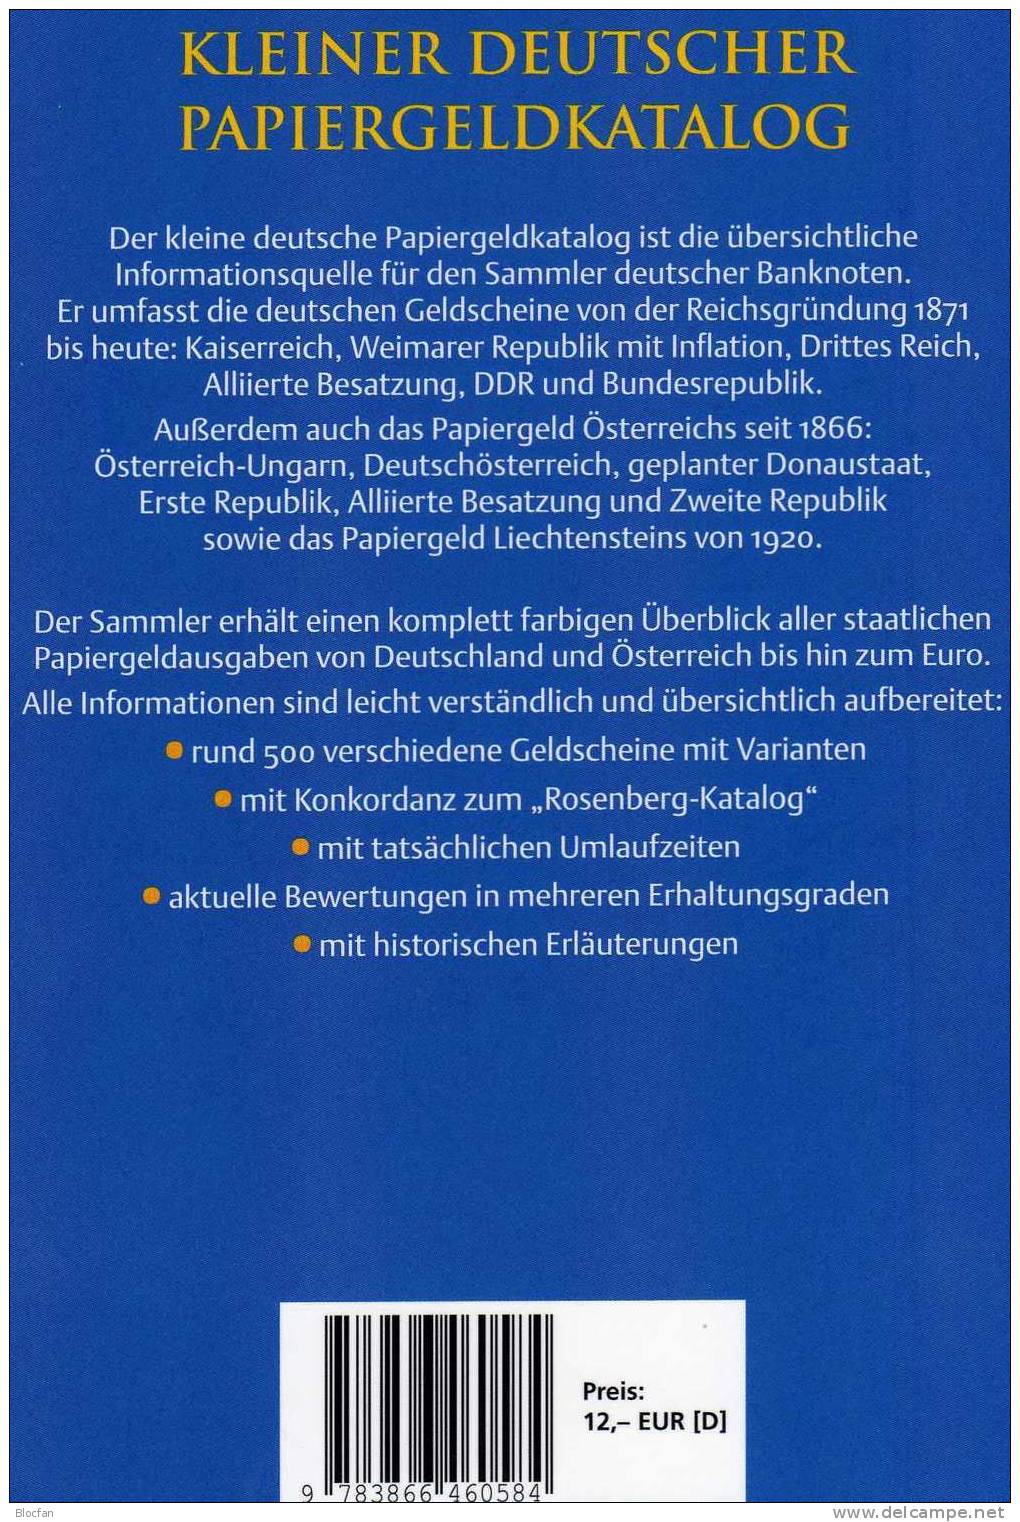 Banknoten Katalog Deutschland 2011 neu 12&euro; für Papiergeld neue Auflage EURO-Banknoten Grabowski Battenberg Verlag